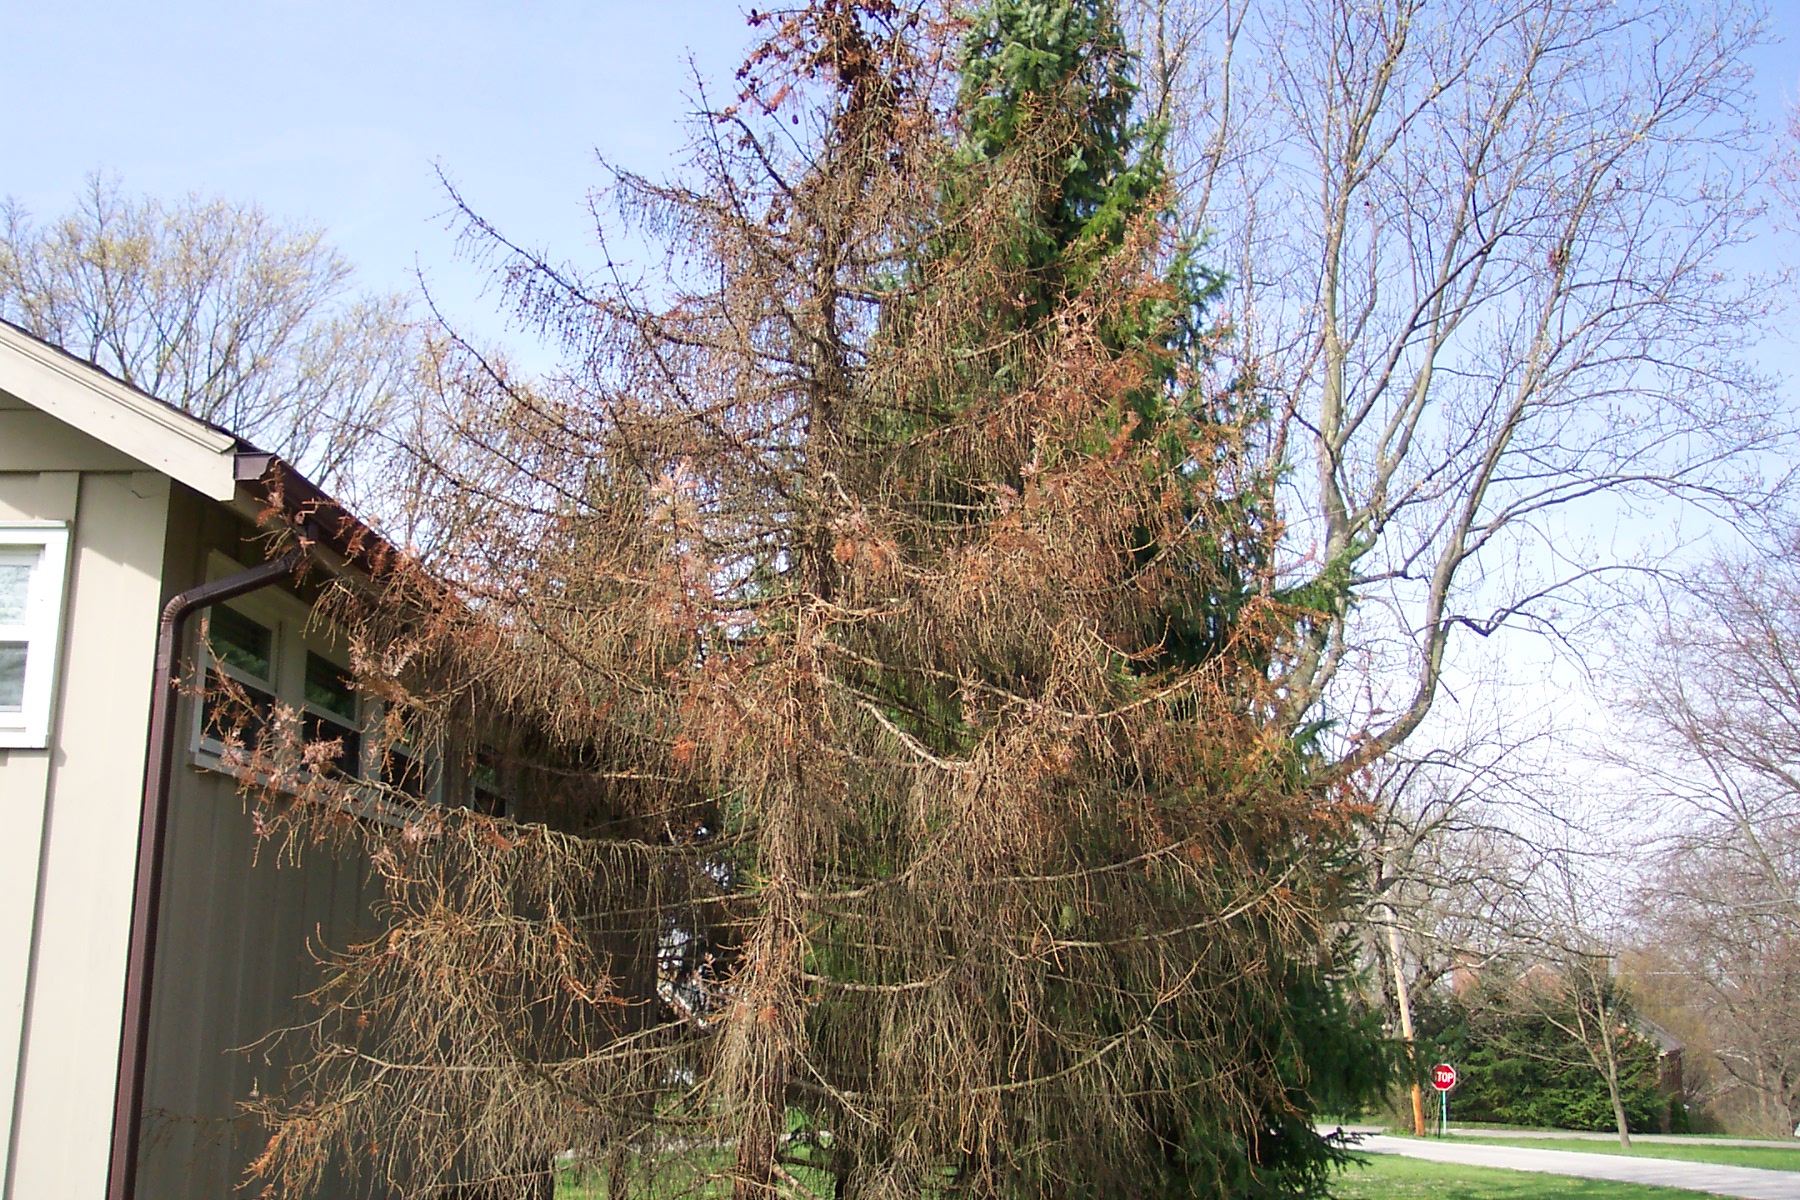 Tree in a landscape showing dieback symptoms